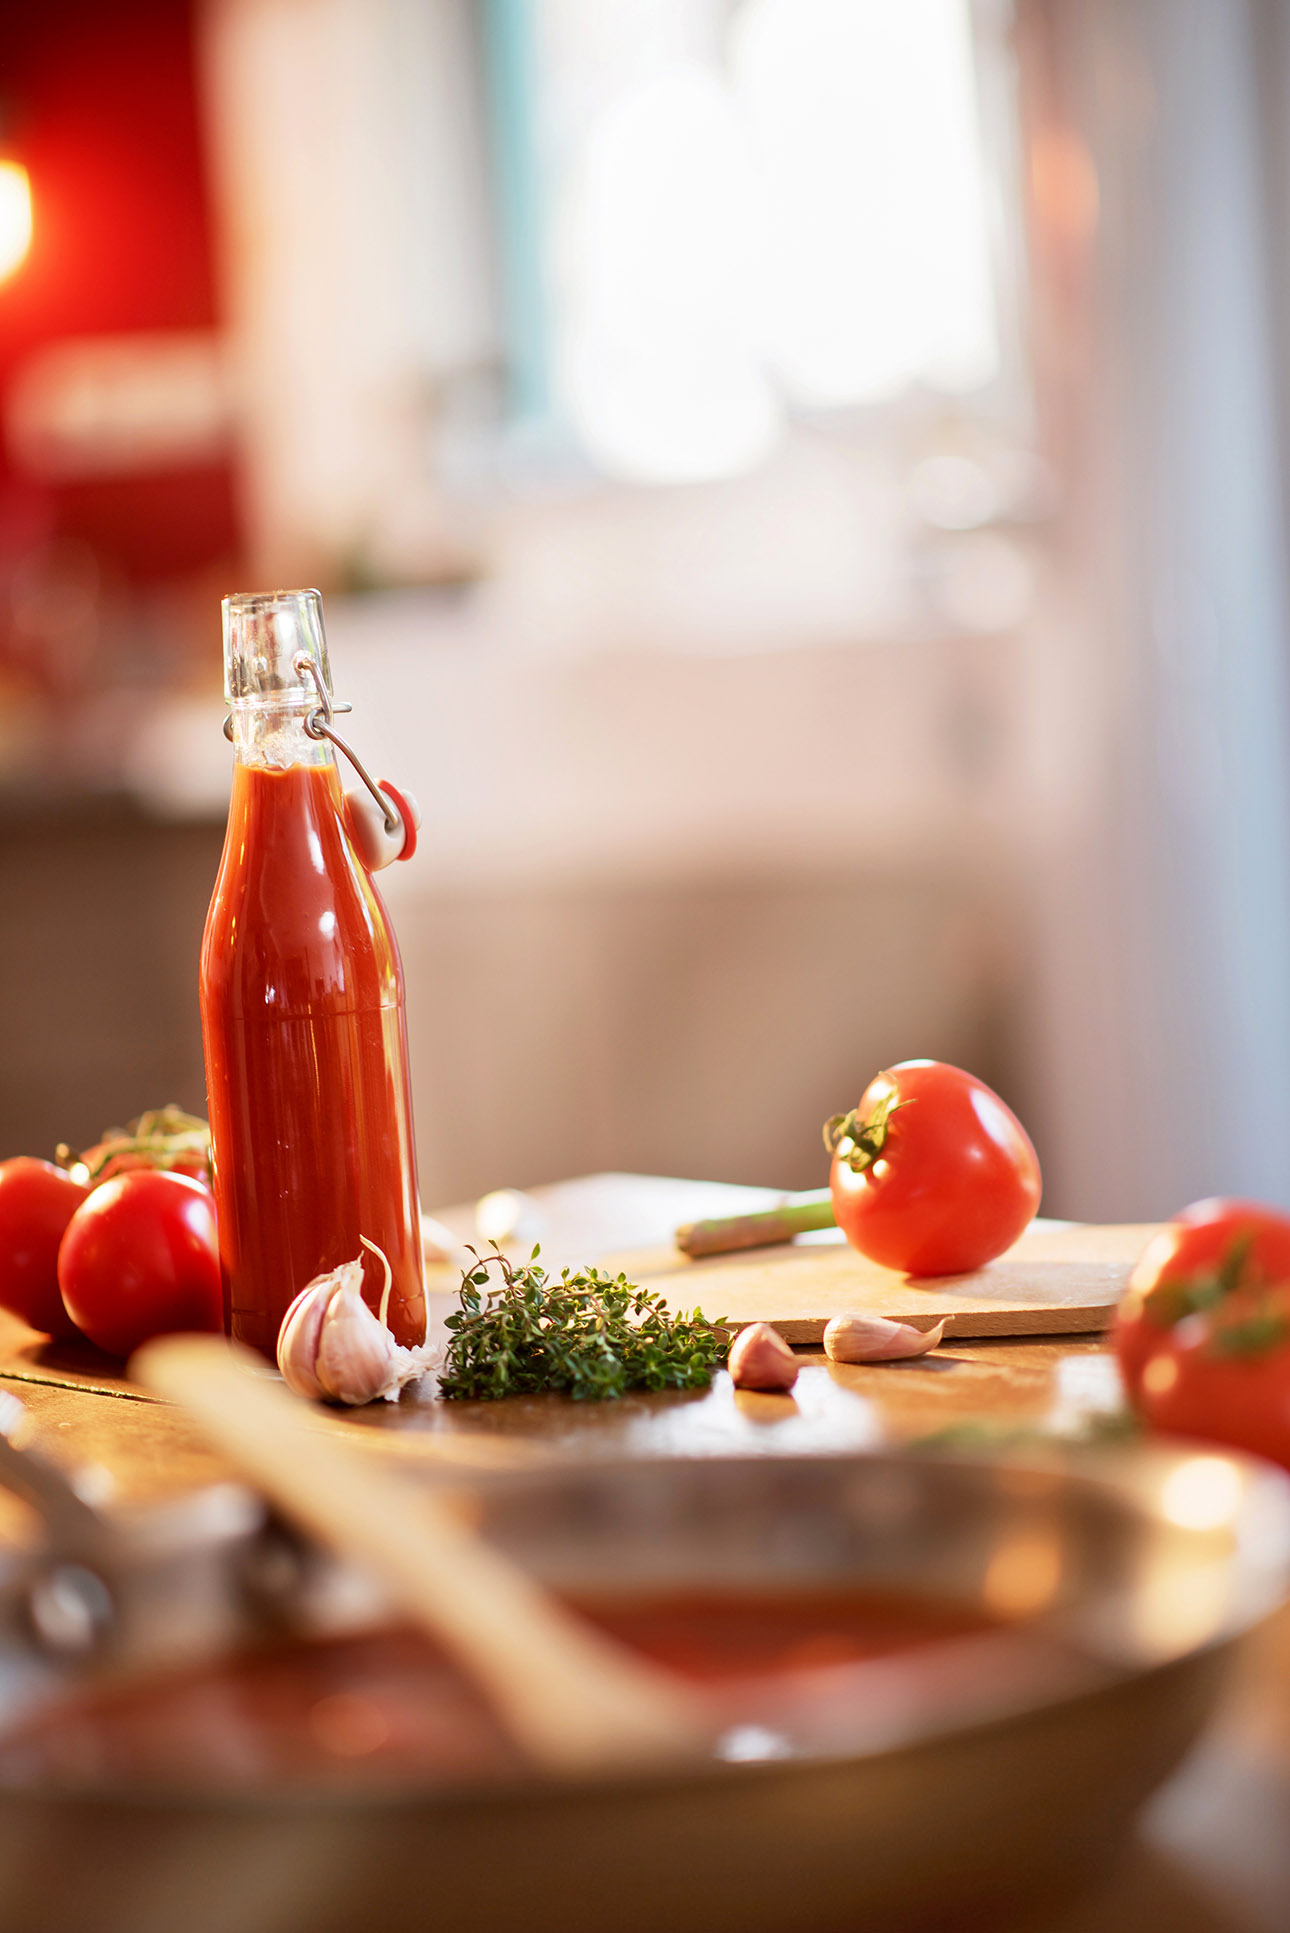 photo culinaire autour de la sauce tomate